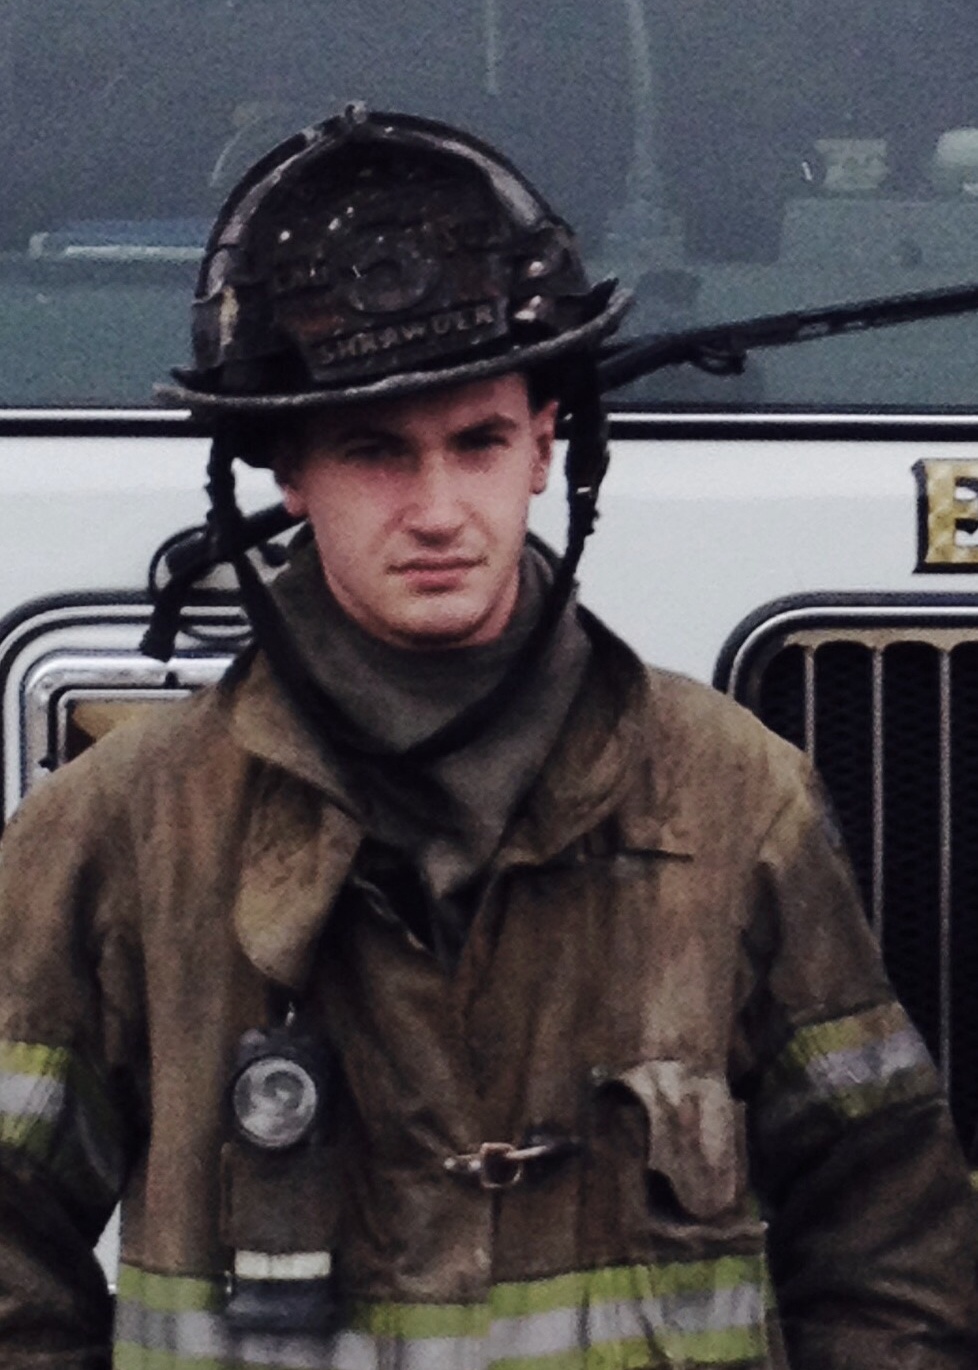 Future Marine displays heroism while serving as volunteer firefighter